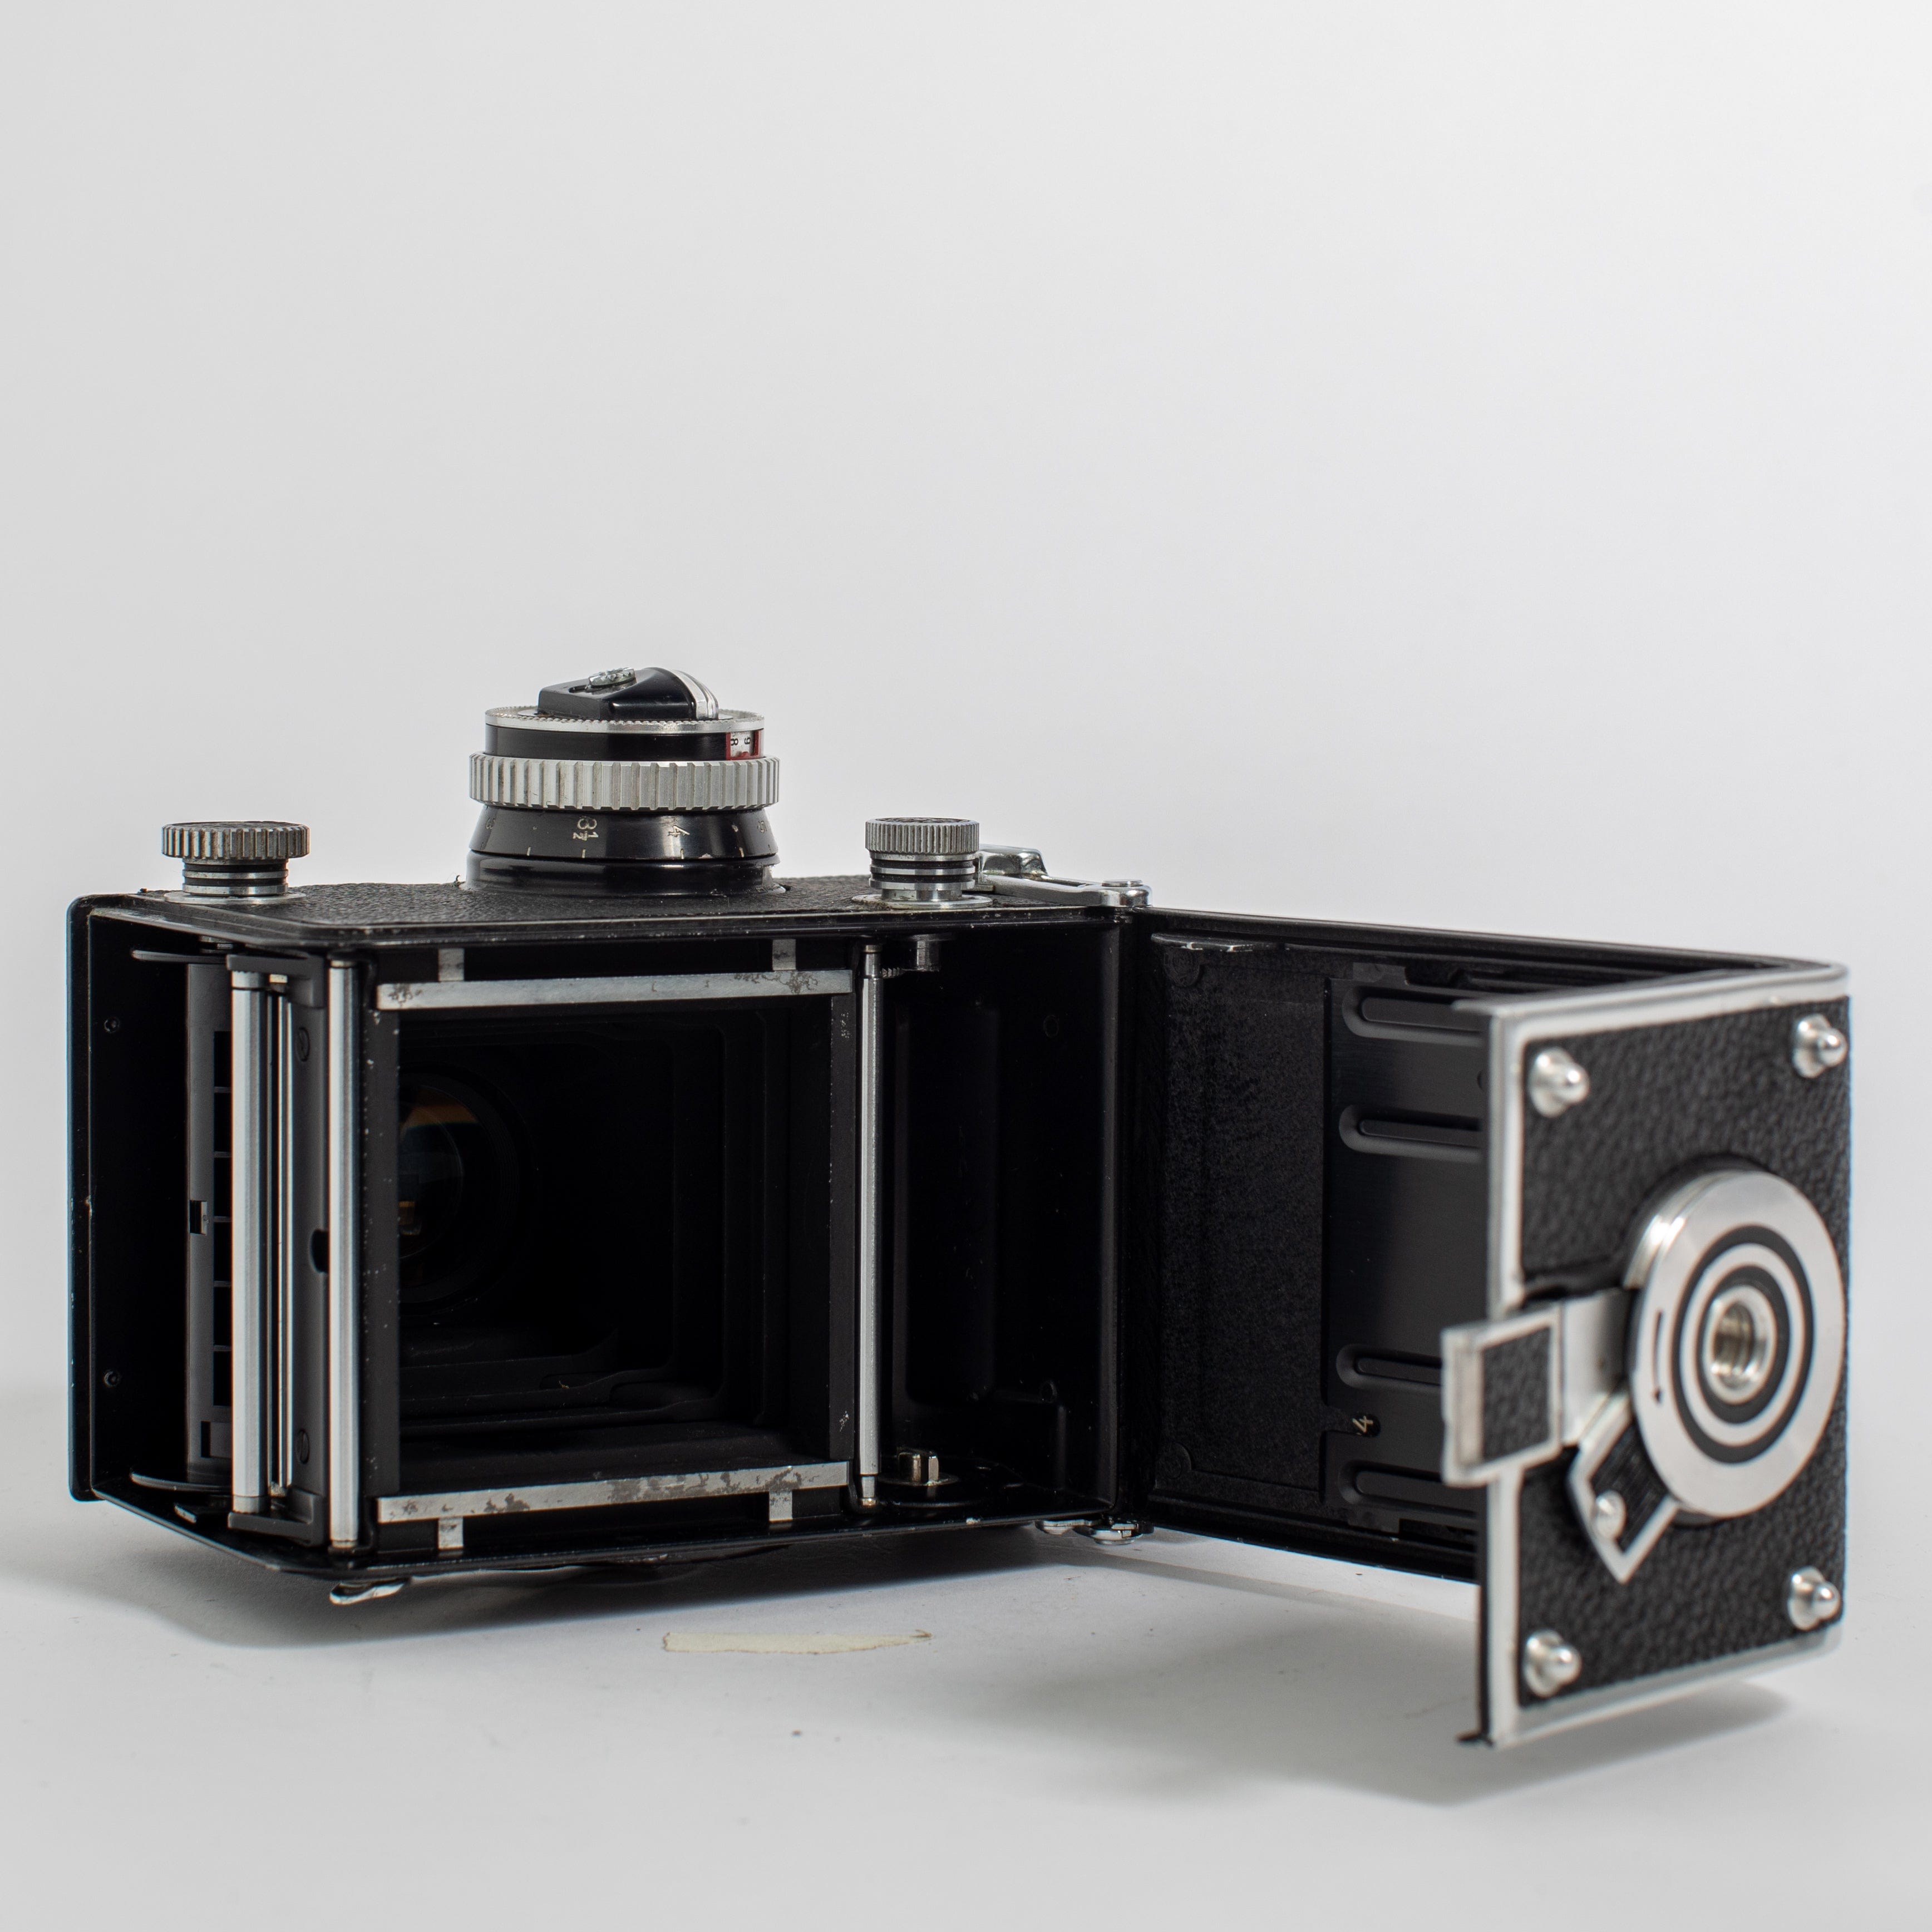 Rolleiflex 3.5C w/ 75mm f/3.5 Zeiss Planar – Film Supply Club